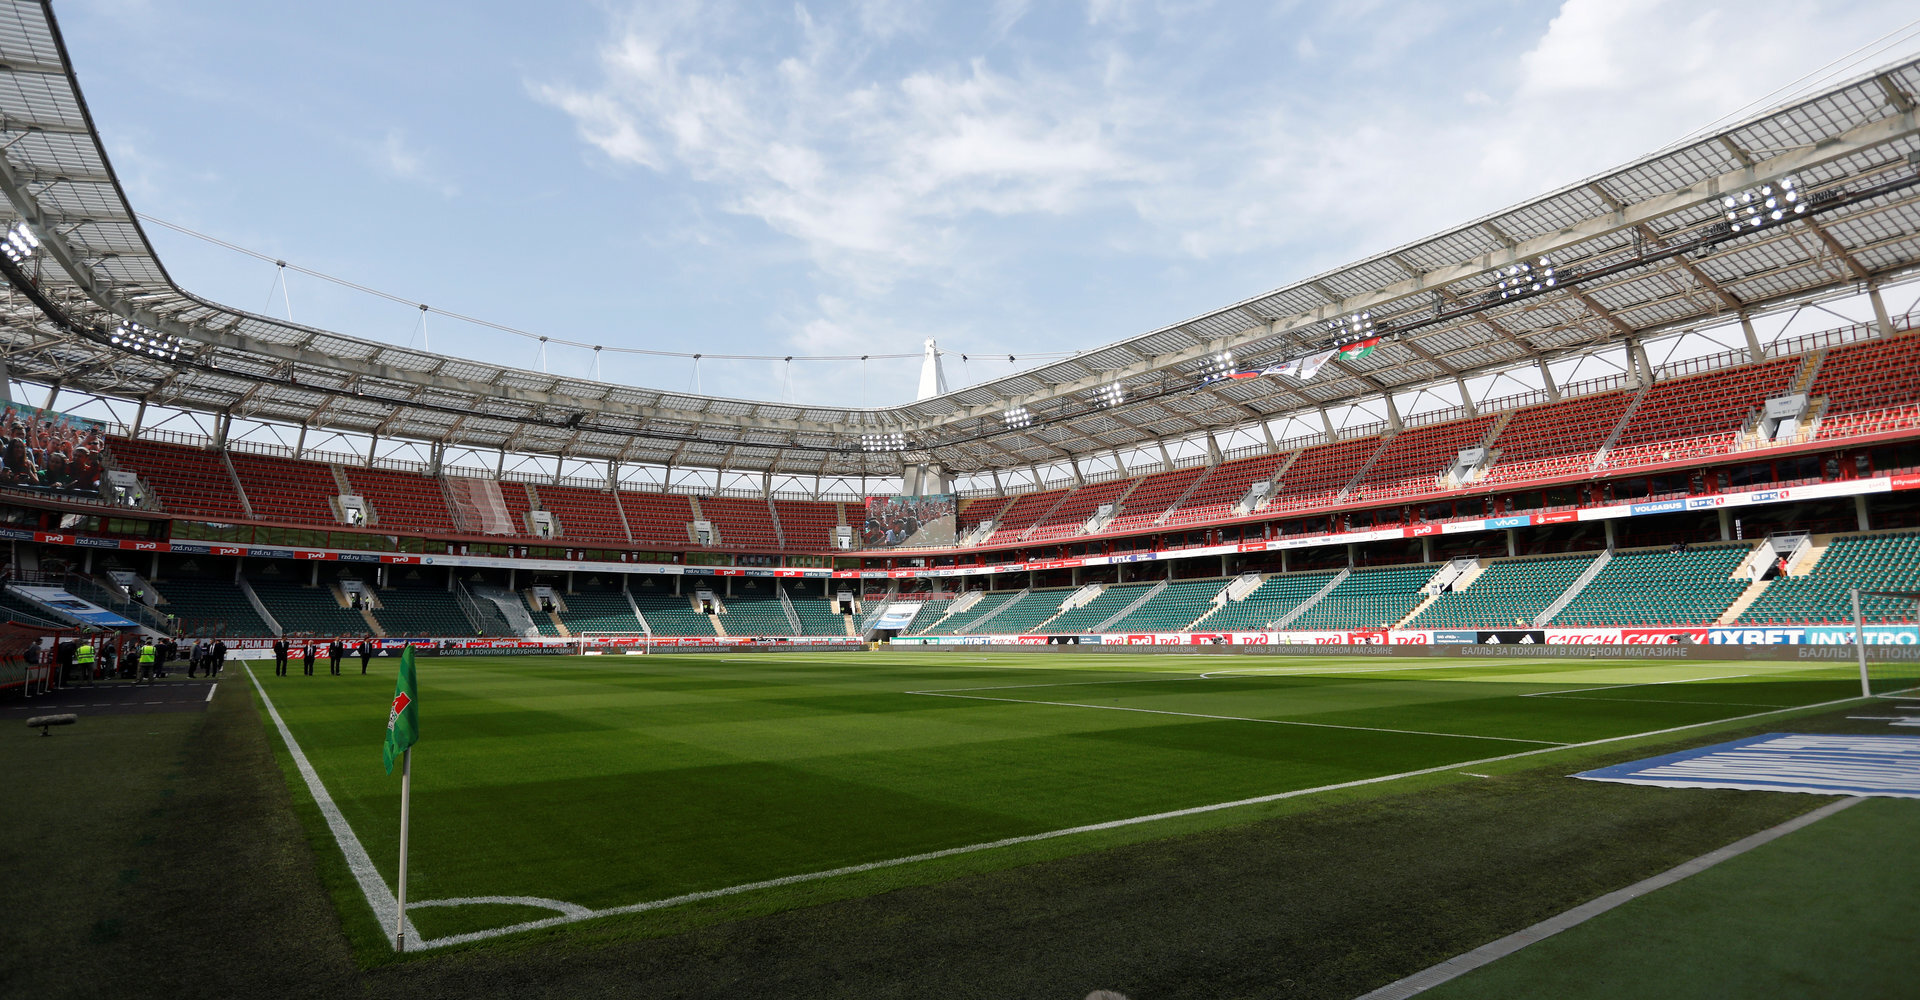 Локомотив» проведет матчи ЛЧ на своем стадионе в Черкизово